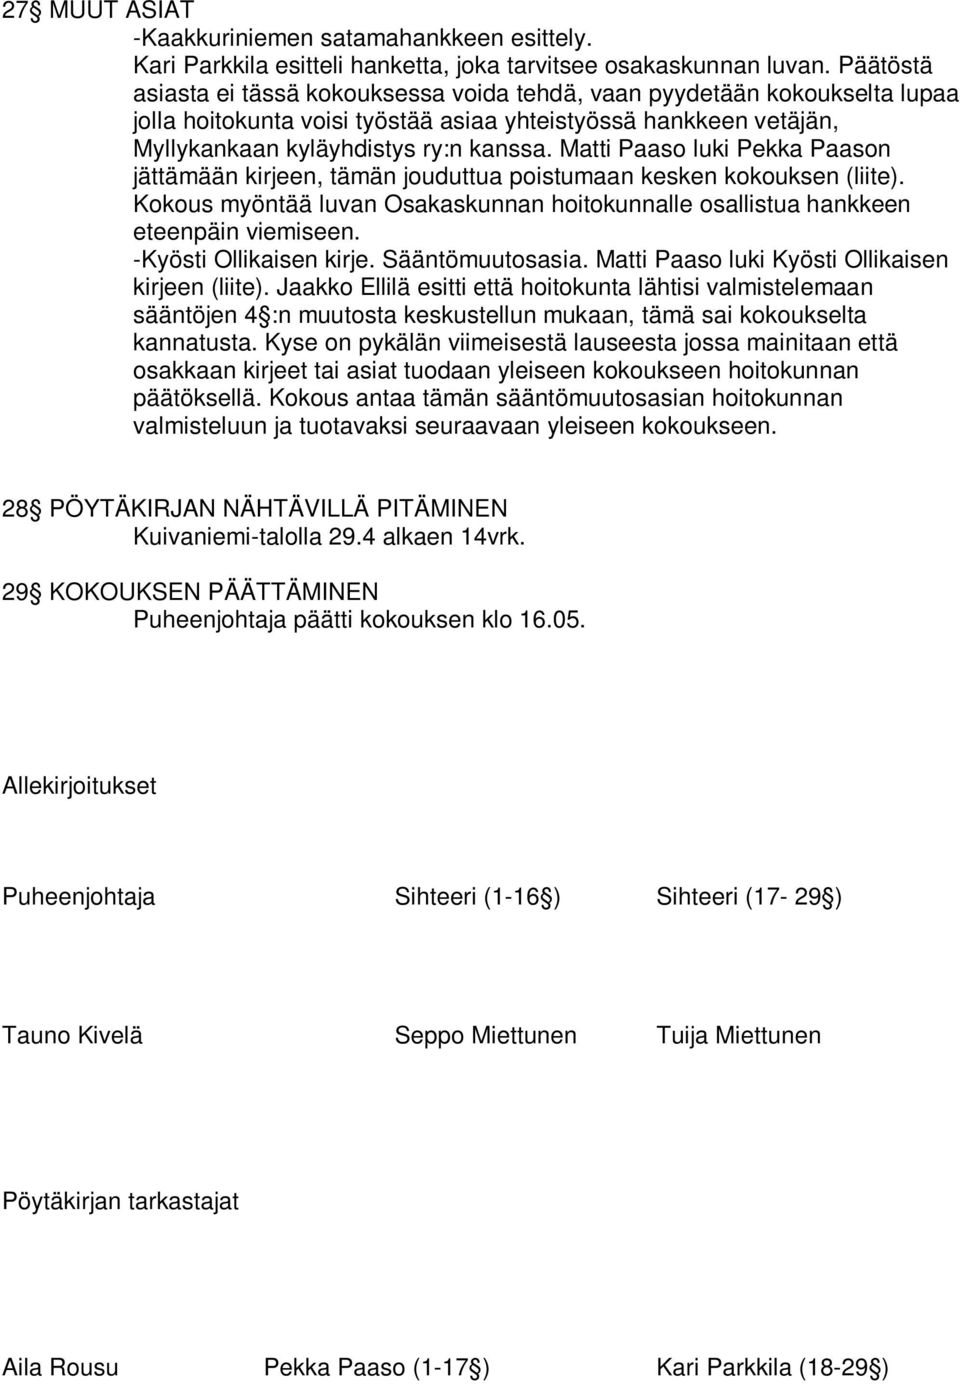 Matti Paaso luki Pekka Paason jättämään kirjeen, tämän jouduttua poistumaan kesken kokouksen (liite). Kokous myöntää luvan Osakaskunnan hoitokunnalle osallistua hankkeen eteenpäin viemiseen.